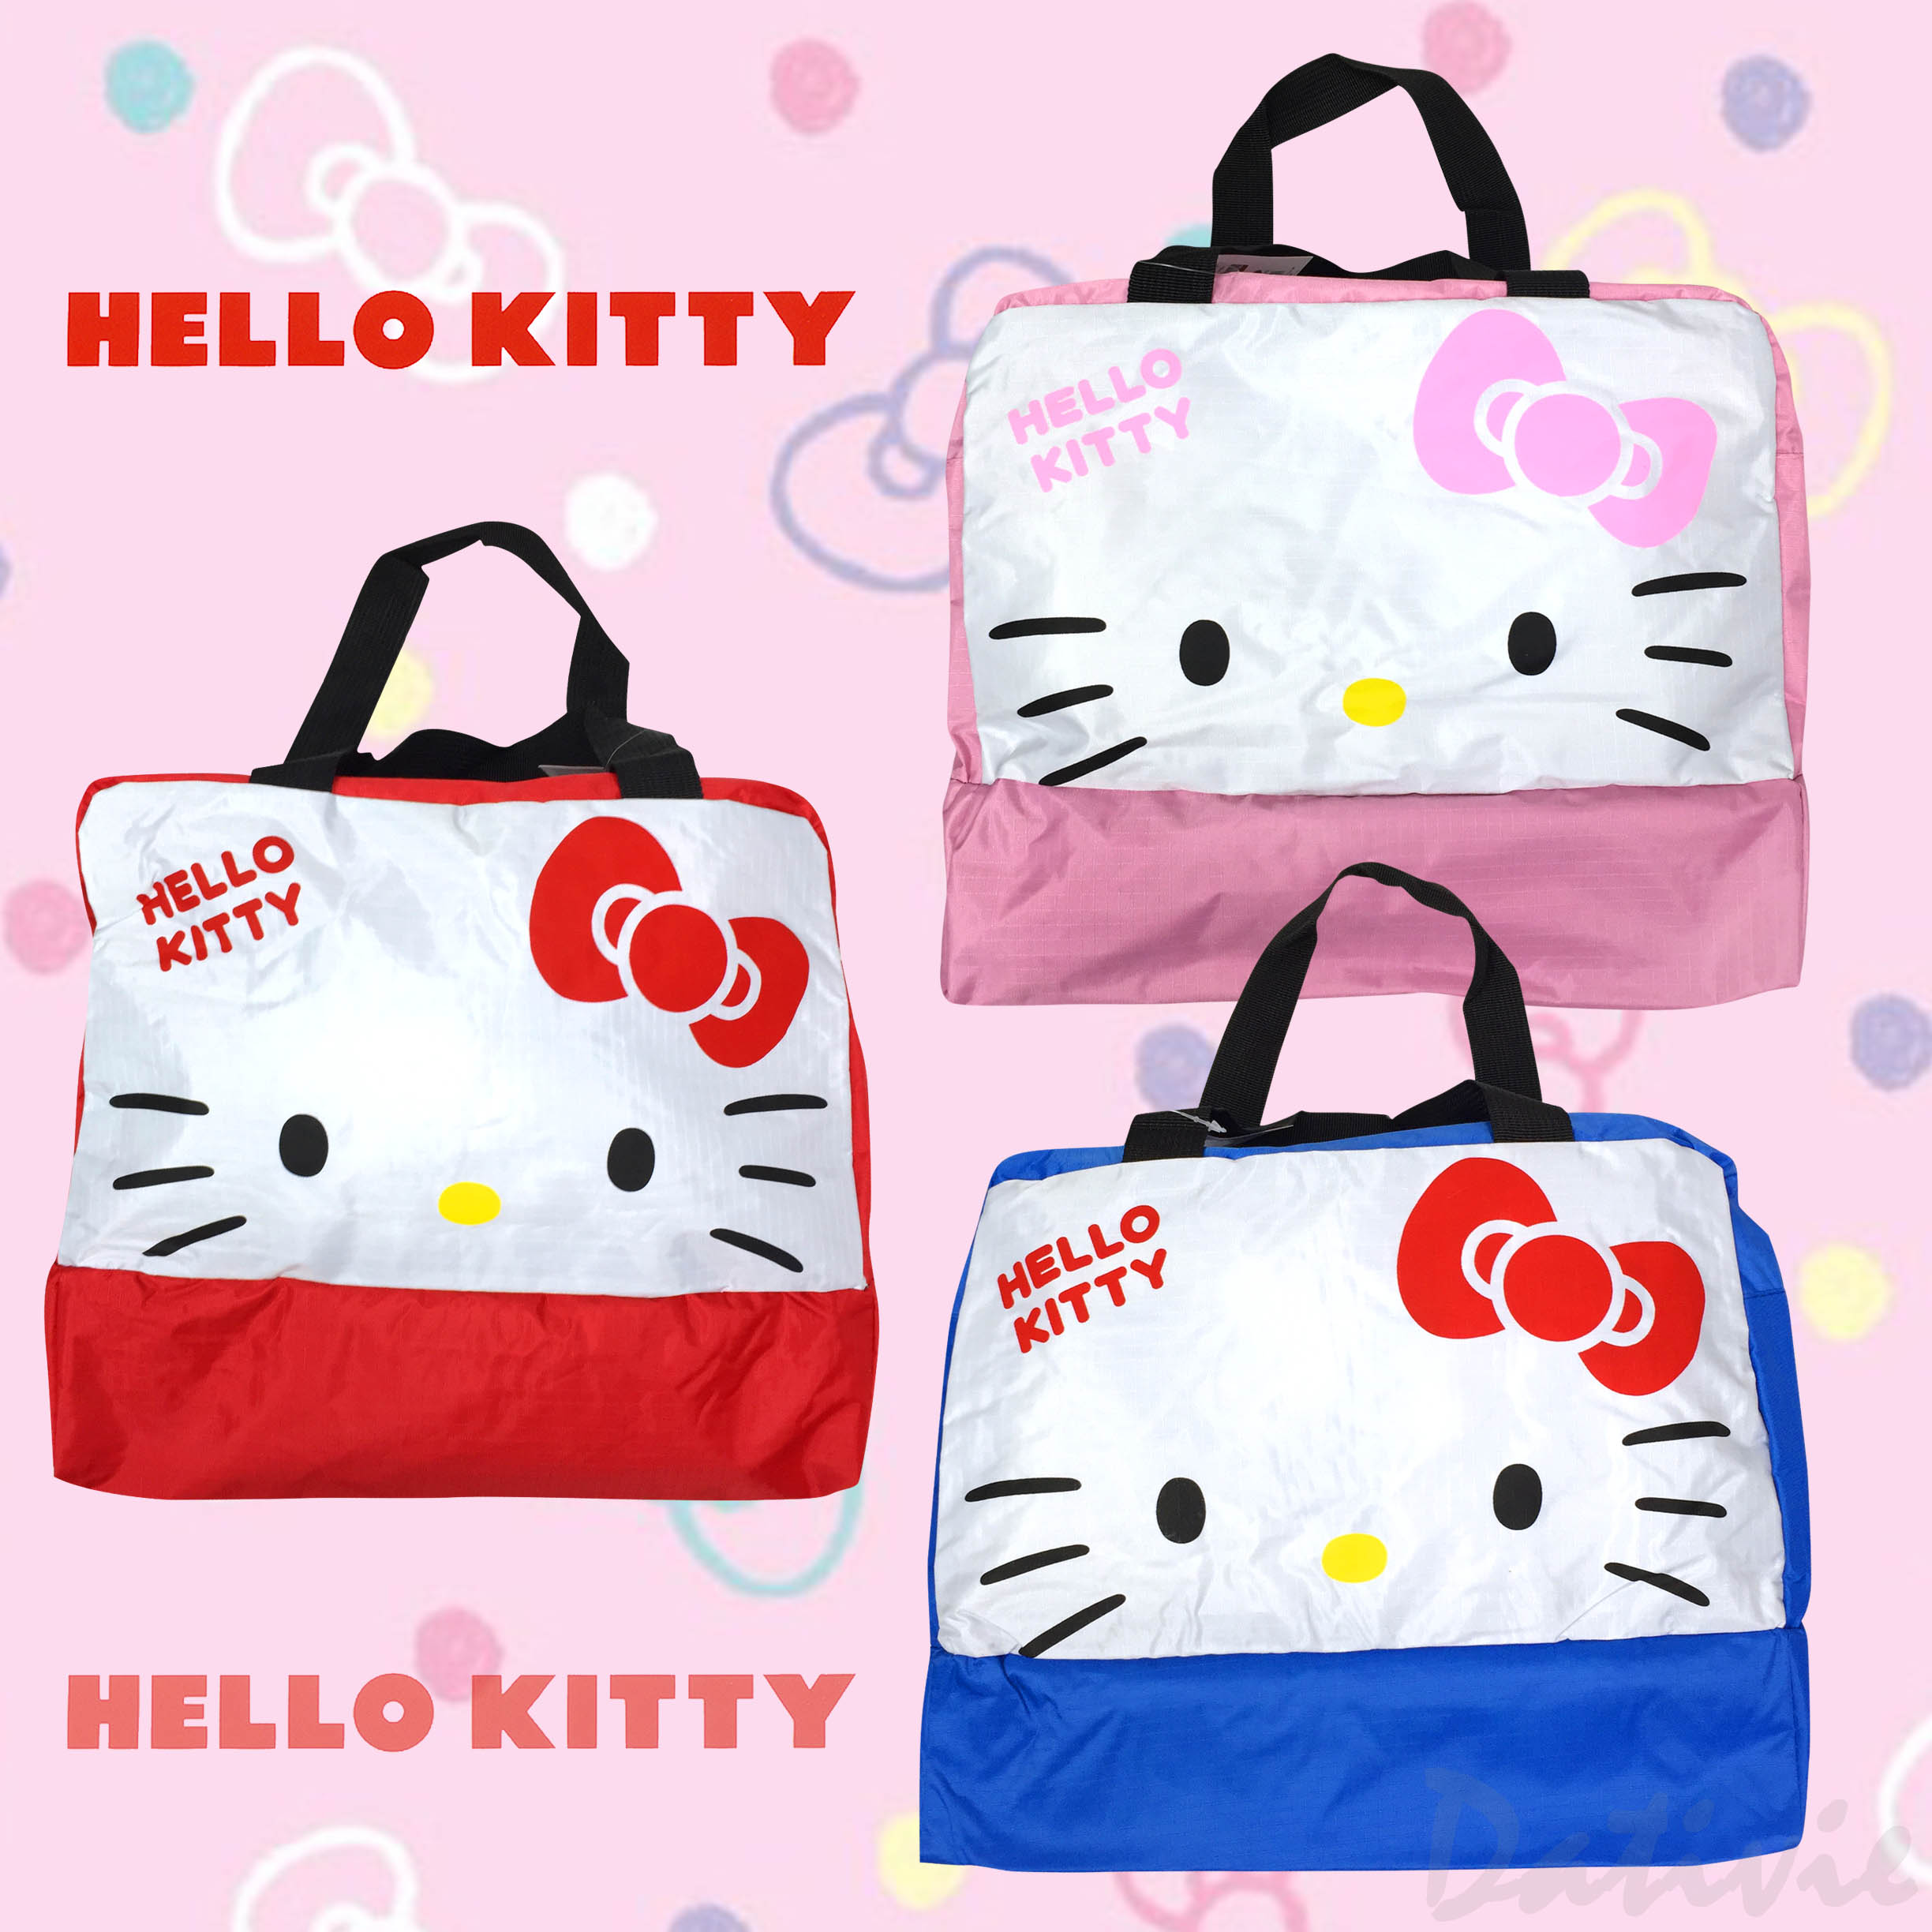 乾溼雙層兩用袋-(隨機)凱蒂貓 HELLO KITTY 三麗鷗 Sanrio正版授權